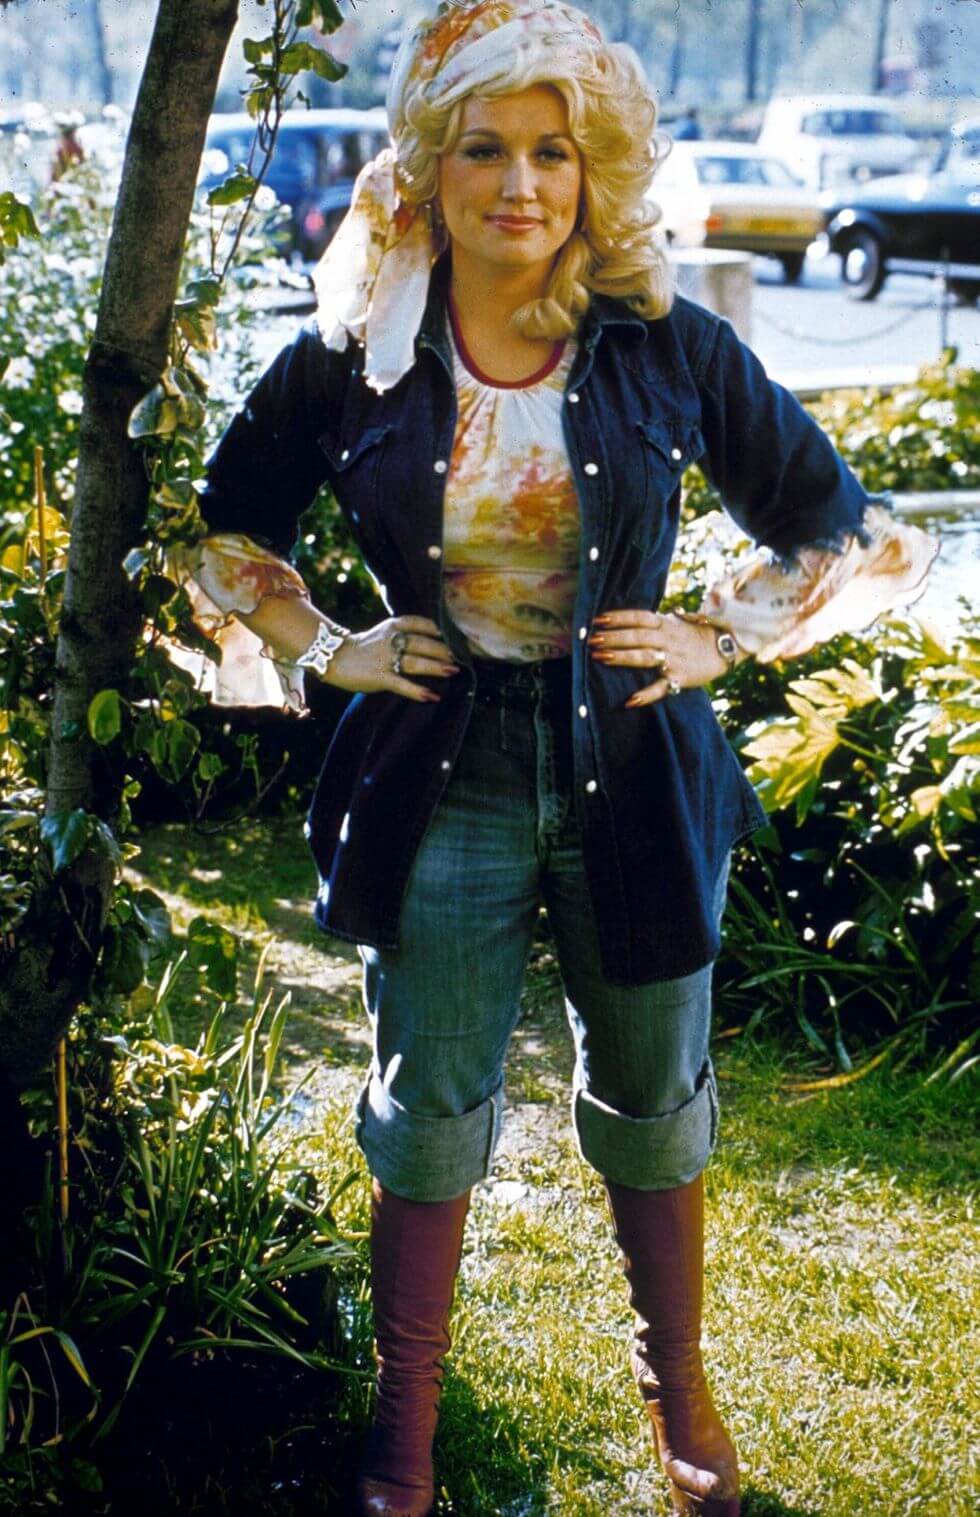 30 Stunning Photos Of A Young Dolly Parton